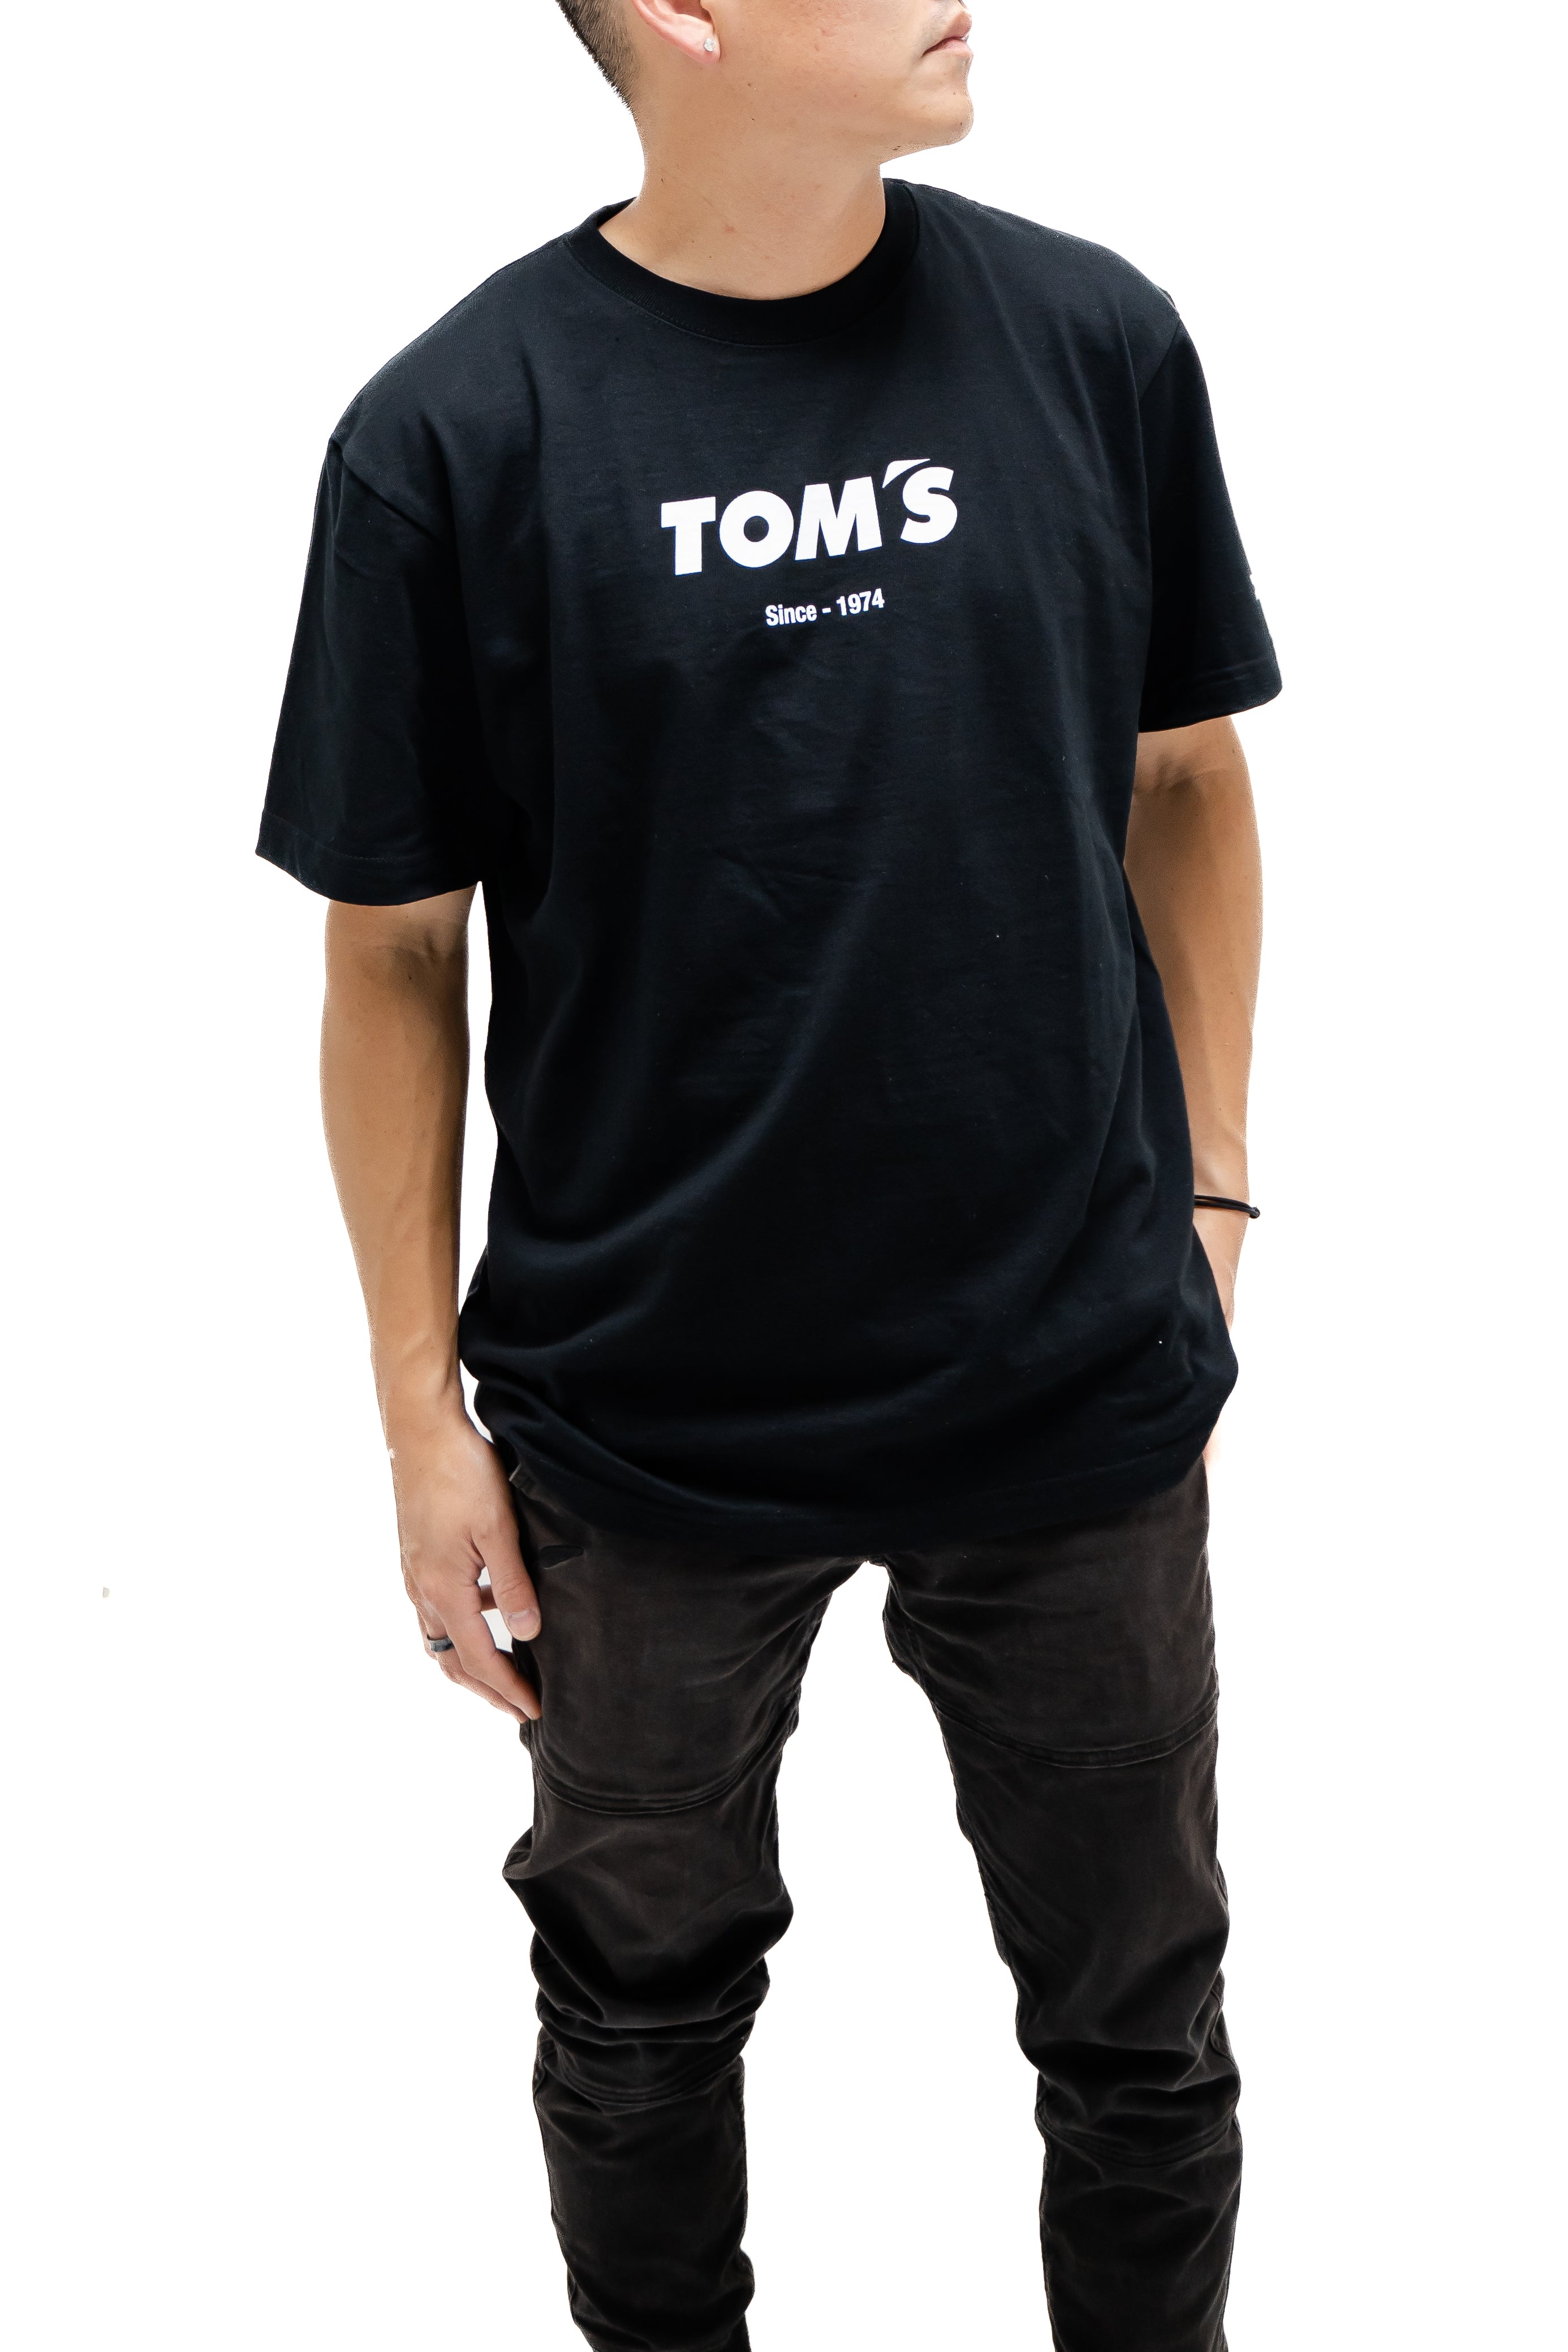 TOM'S Racing - Heritage (Katakana) Premium T-Shirt-1